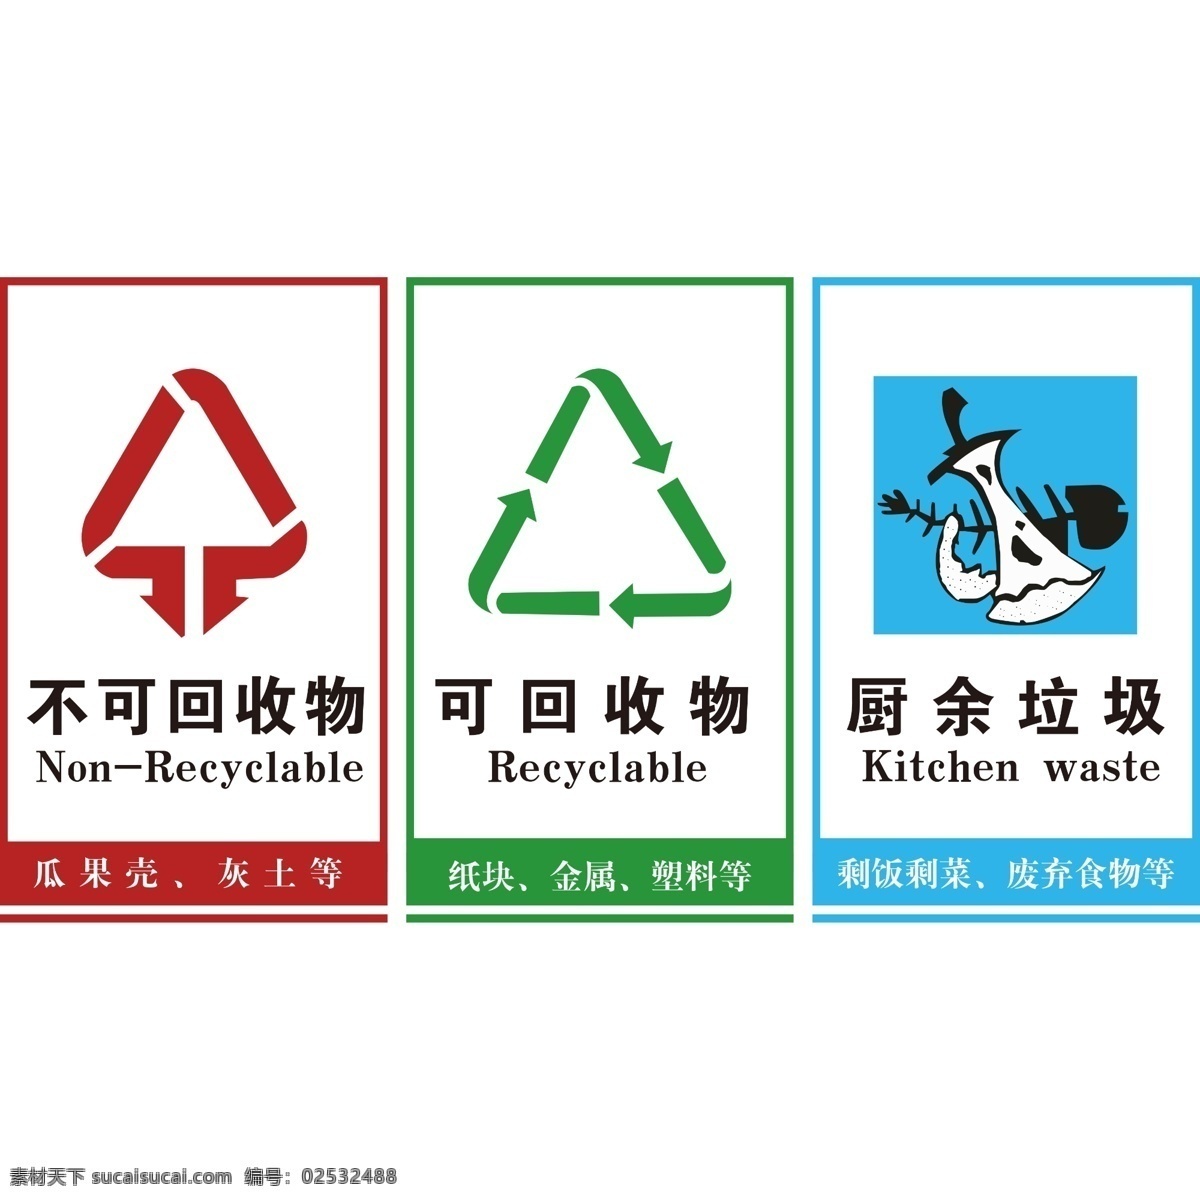 可回收垃圾 不可回收物 环保 不可回收垃圾 环保图标 环保标志 环保符号 垃圾桶 垃圾桶符号 垃圾桶图标 垃圾桶标志